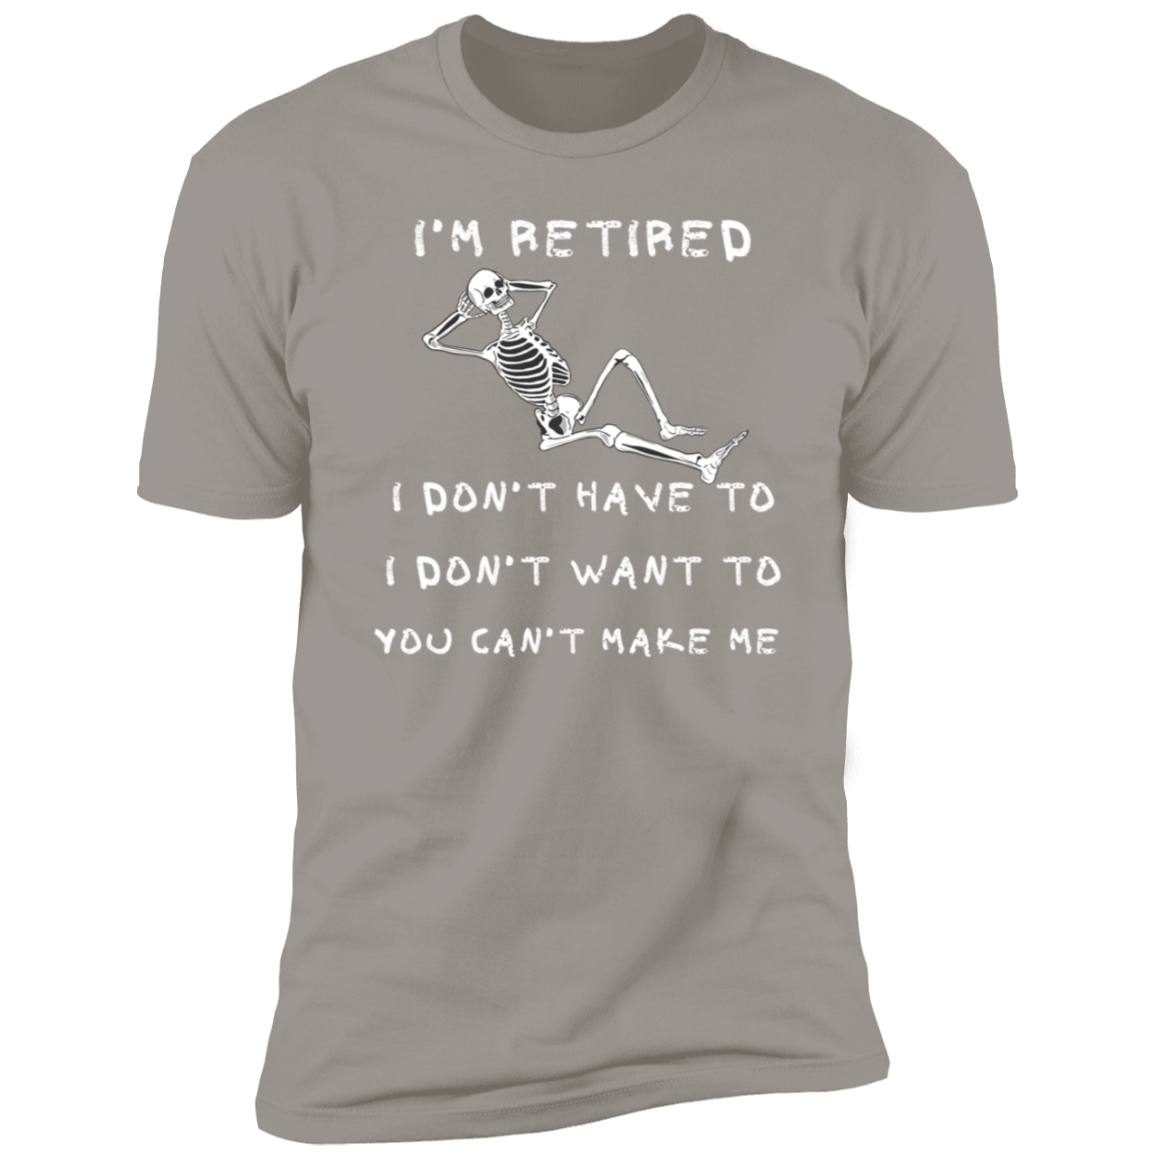 Retired / Men's  Short Sleeve T-Shirt /Summer Time Tee